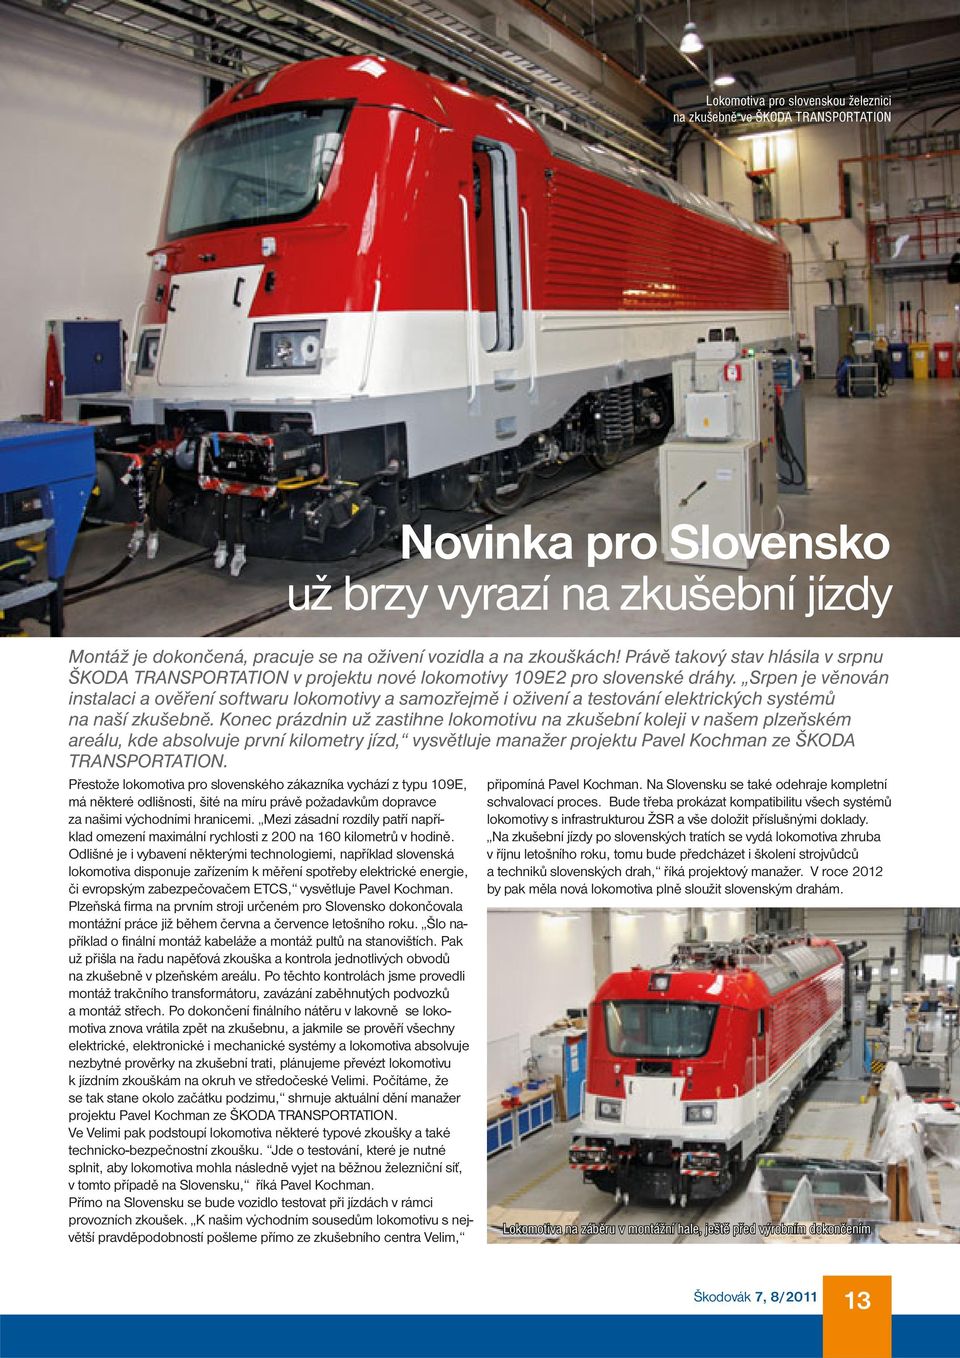 Odlišné je i vybavení některými technologiemi, například slovenská lokomotiva disponuje zařízením k měření spotřeby elektrické energie, či evropským zabezpečovačem ETCS, vysvětluje Pavel Kochman.